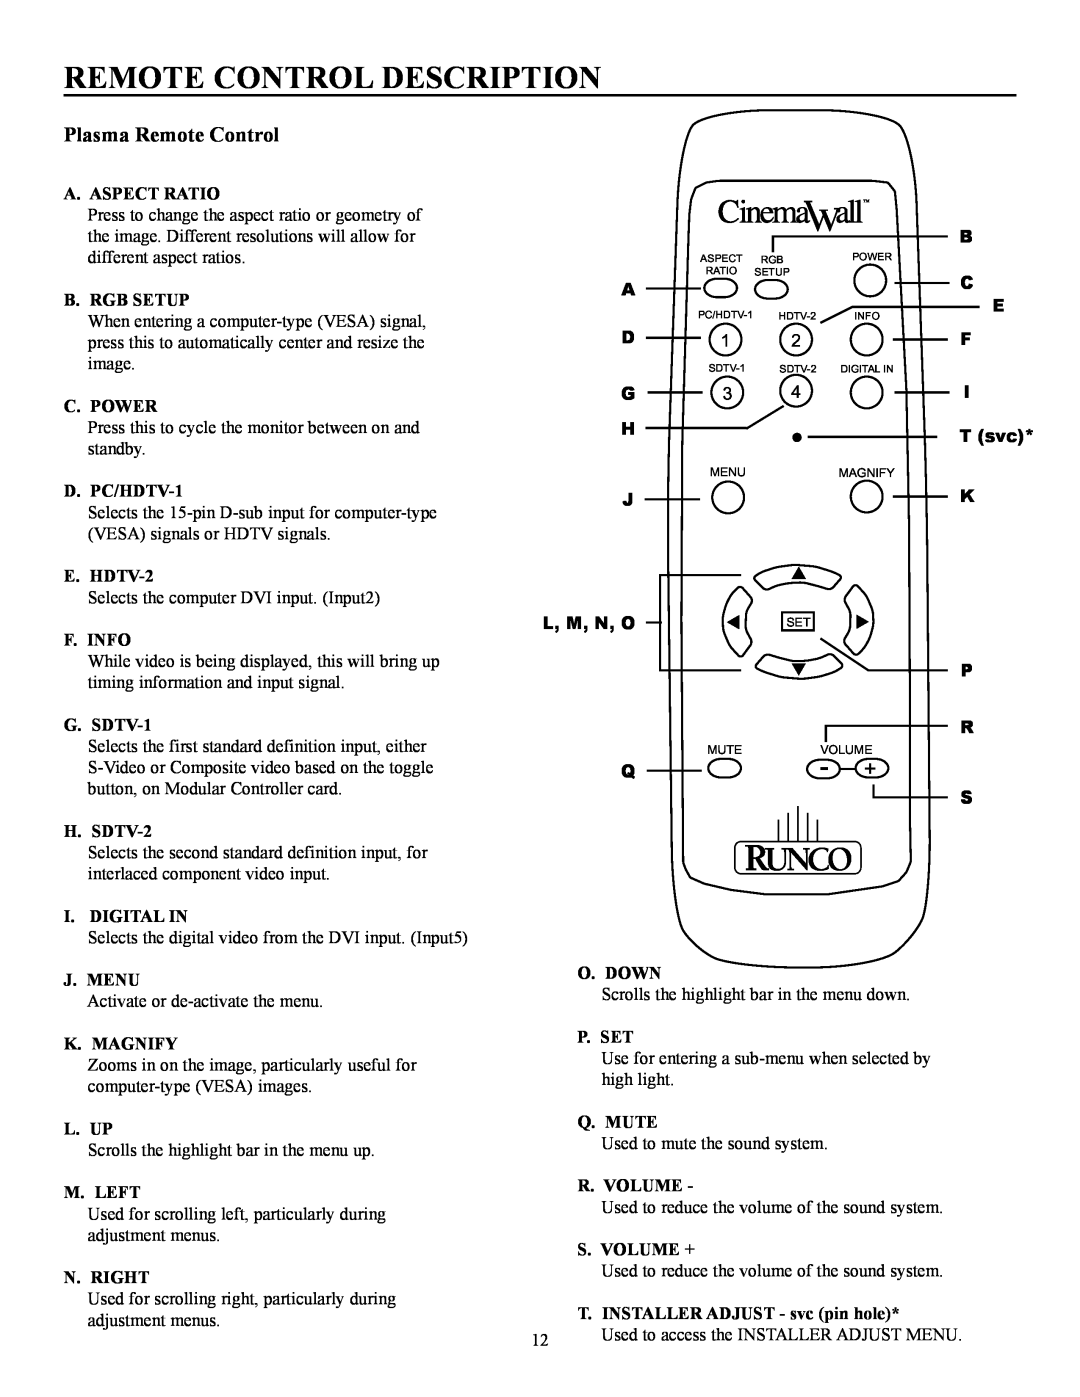 Runco CW-50MC manual Remote Control Description, Plasma Remote Control, A D G H J L, M, N, O Q, T svc 